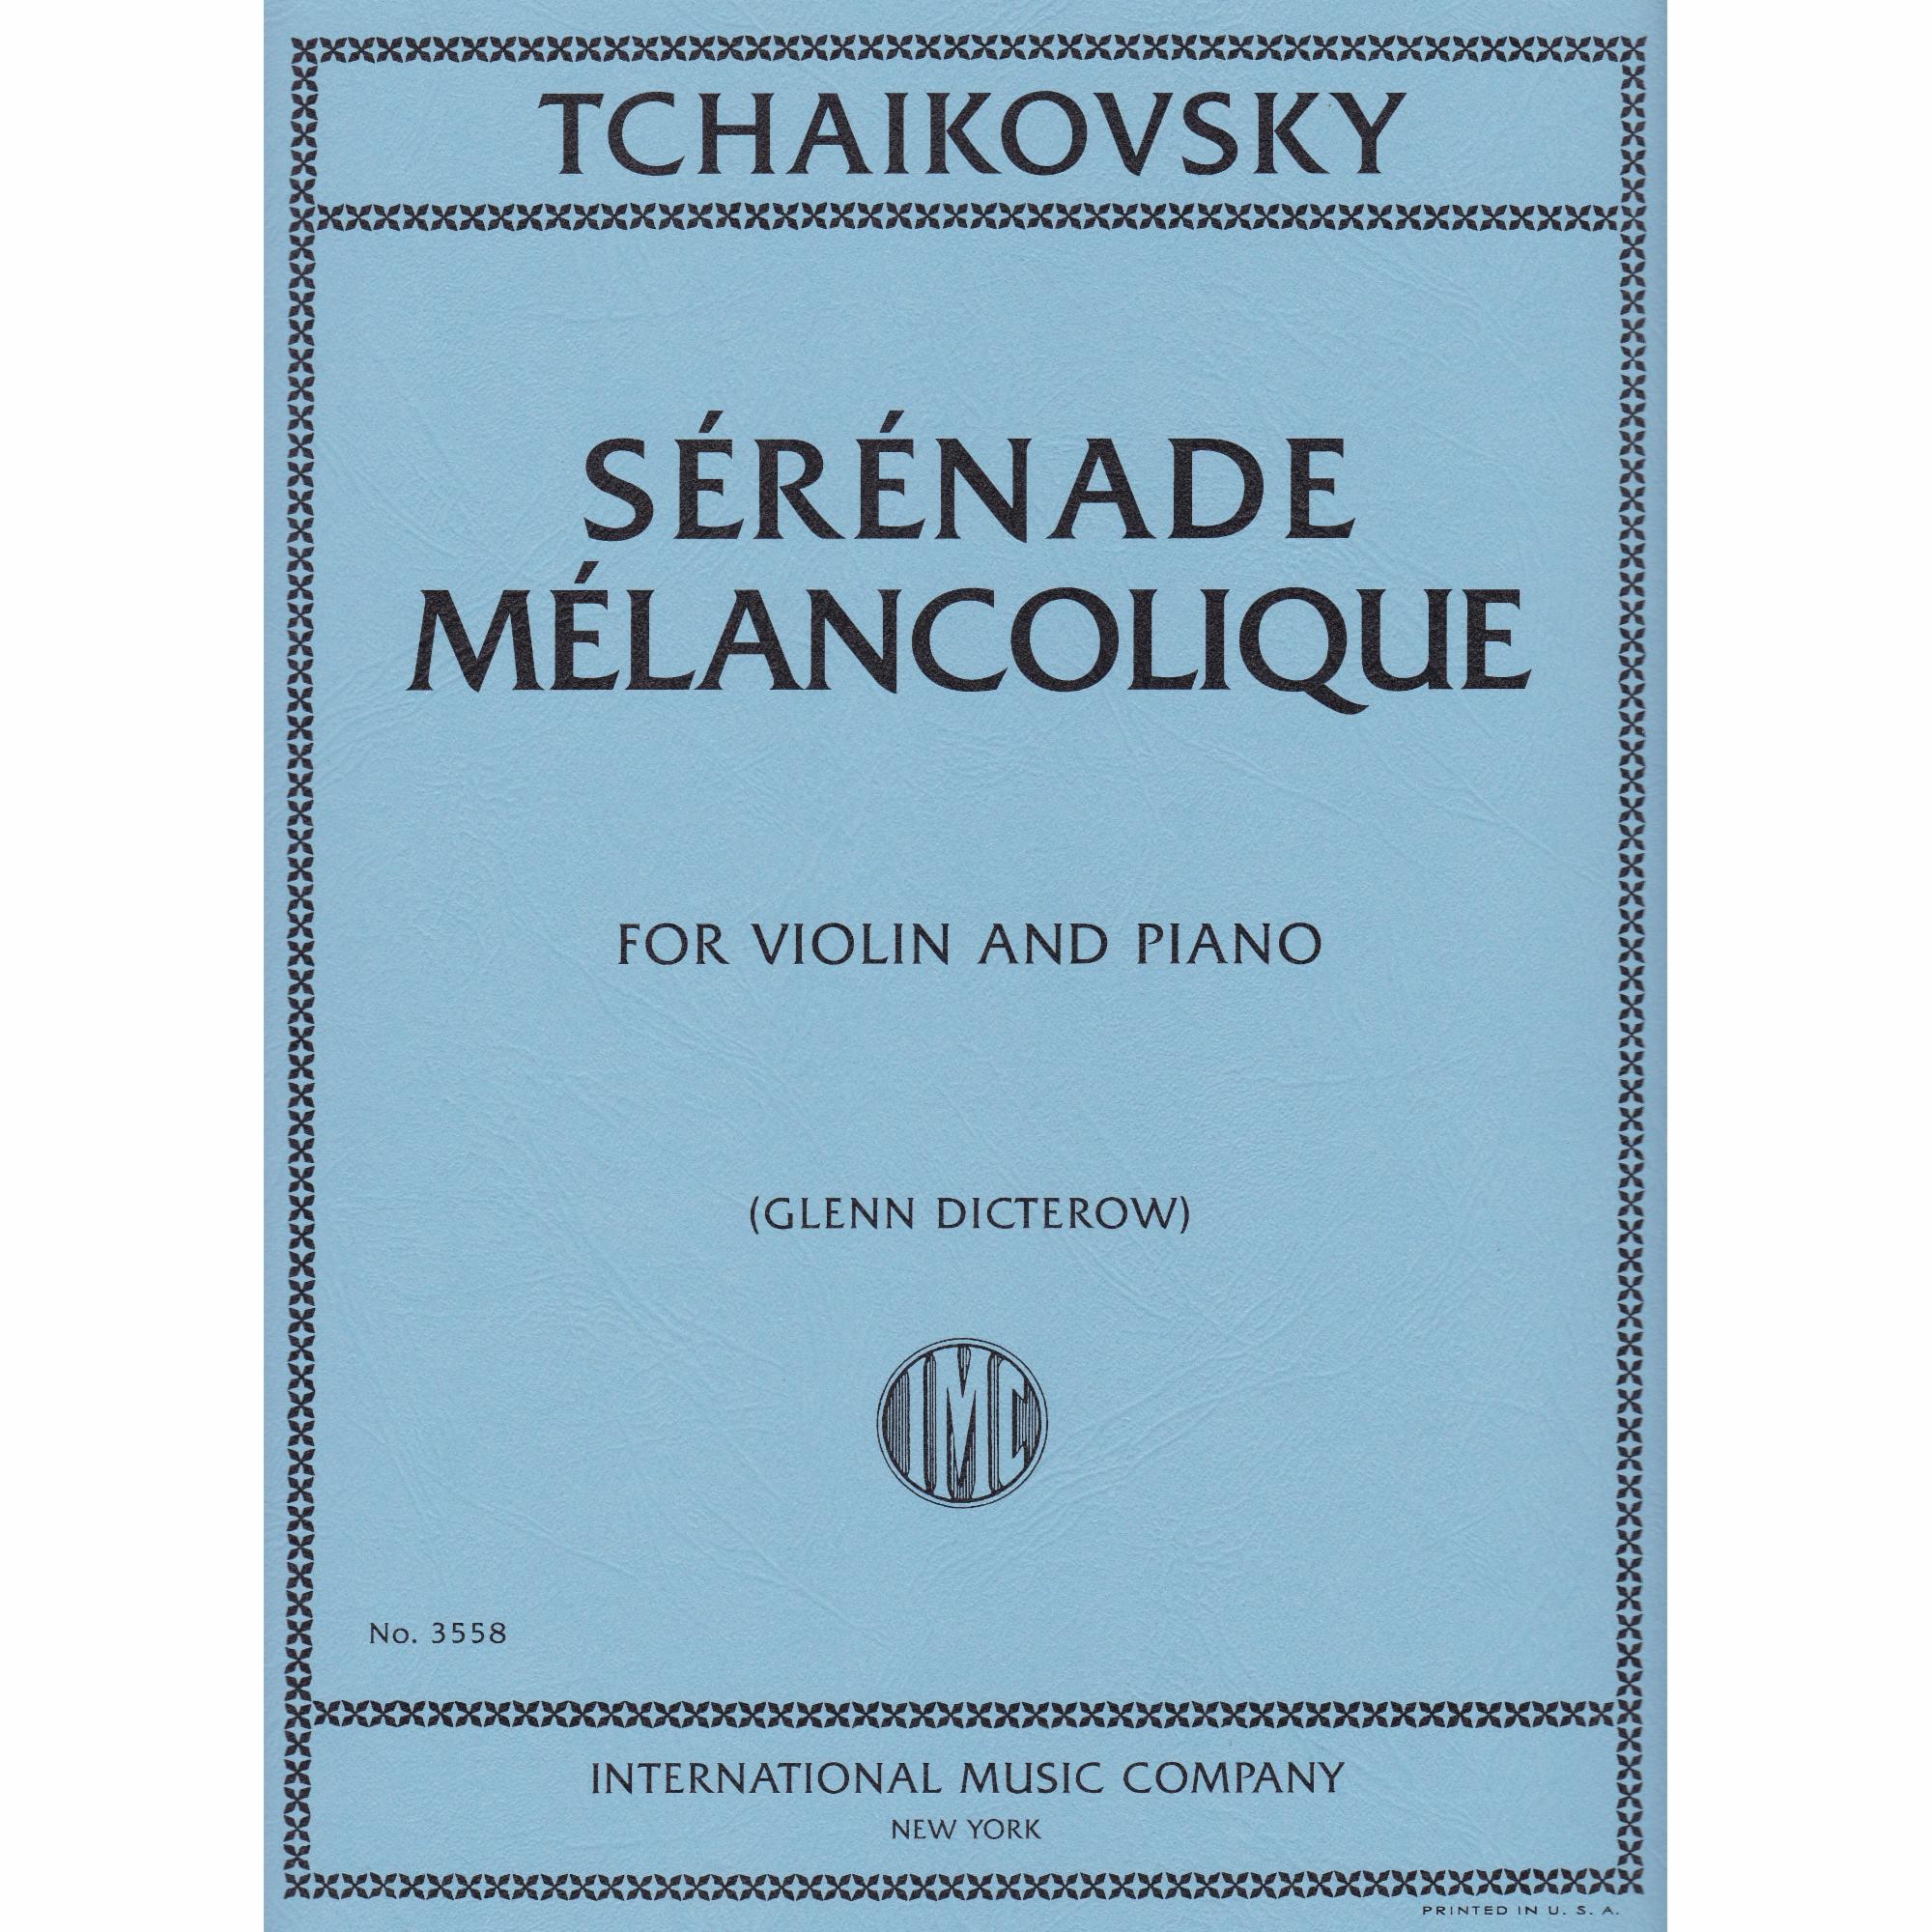 Serenade Melancolique for Violin and Piano, Op. 26